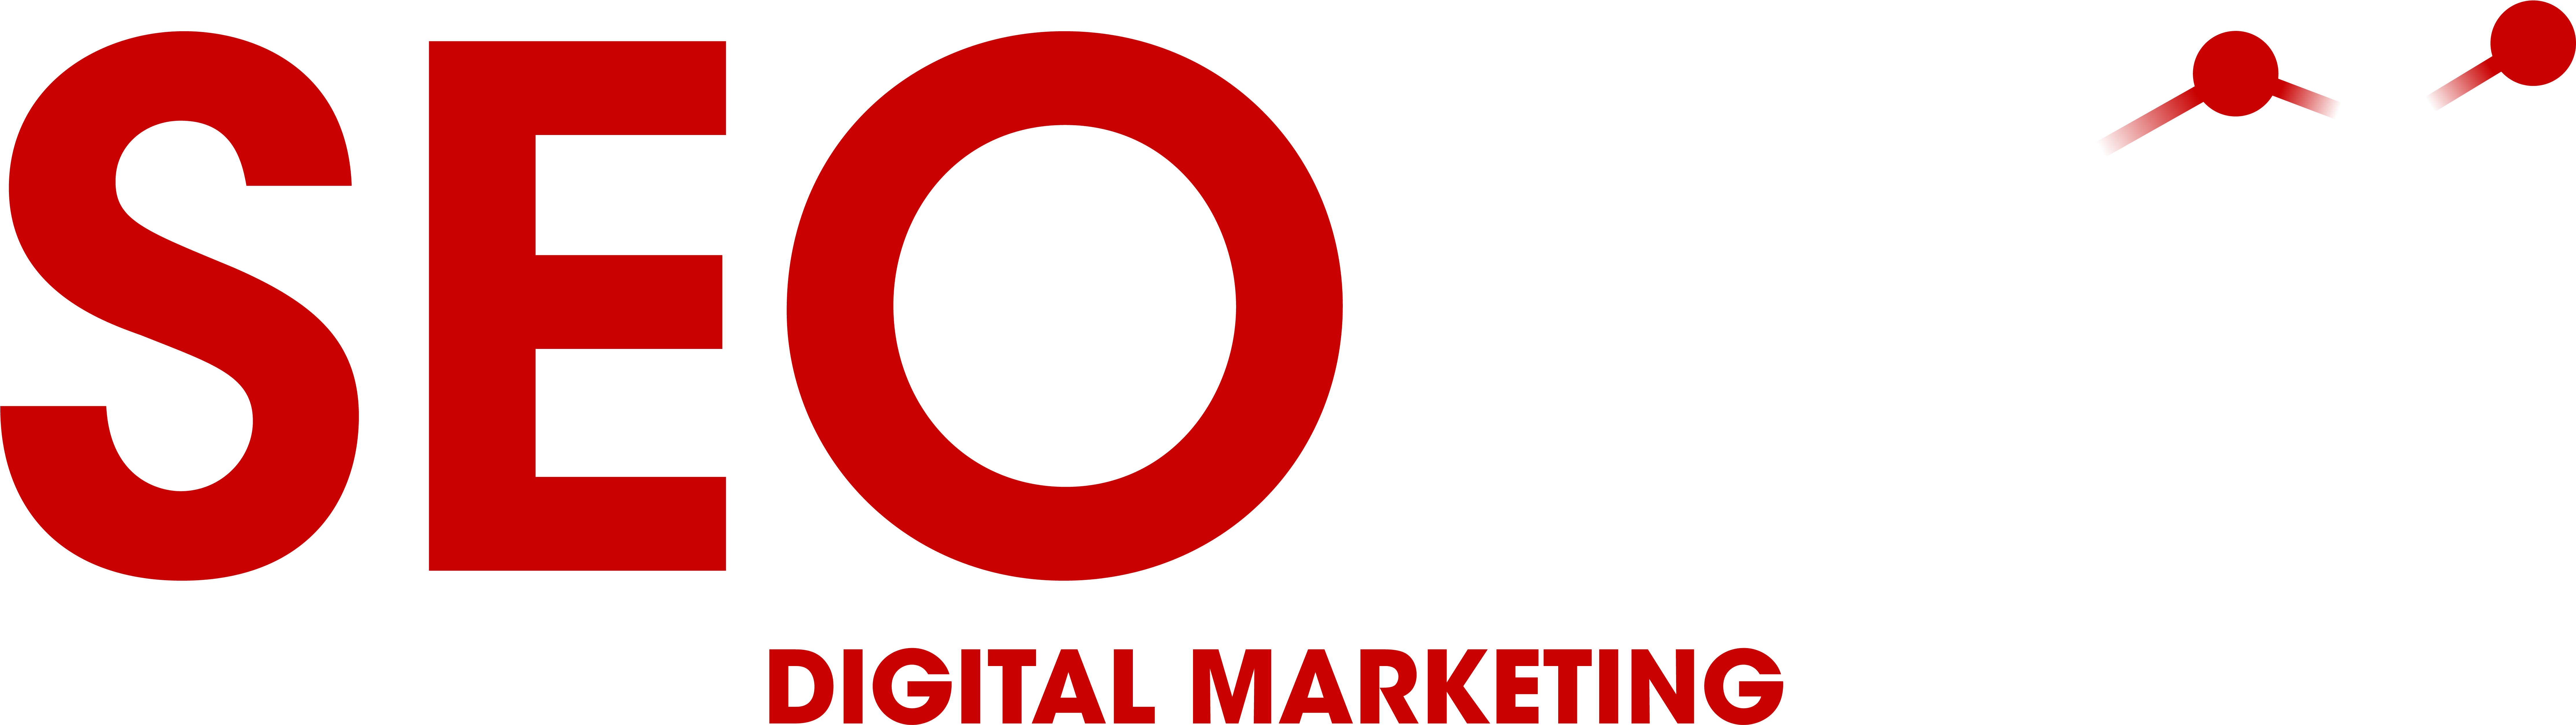 S E O Grey Digital Marketing Consultancy Logo PNG